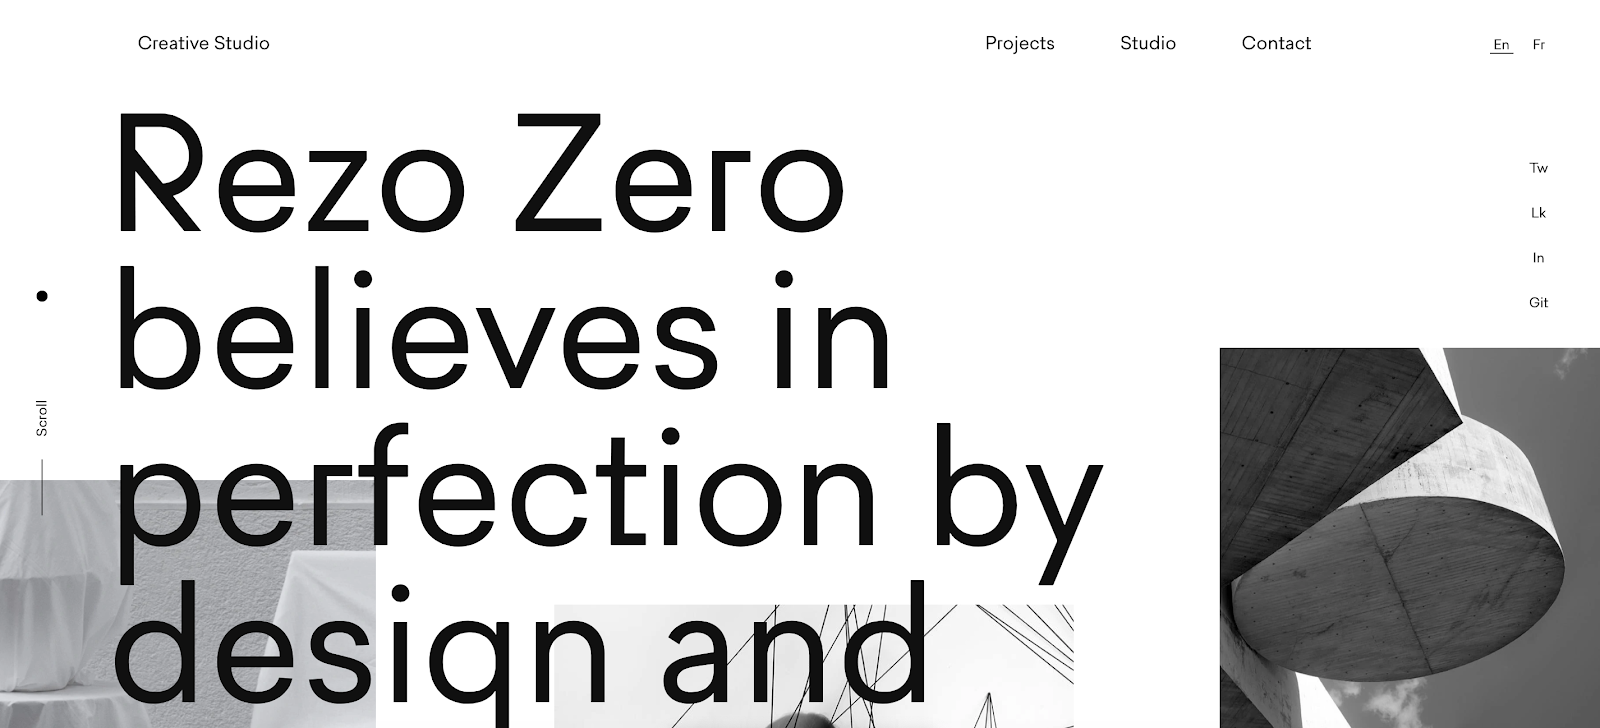 Portafolio de desarrolladores web de Rezo Zero